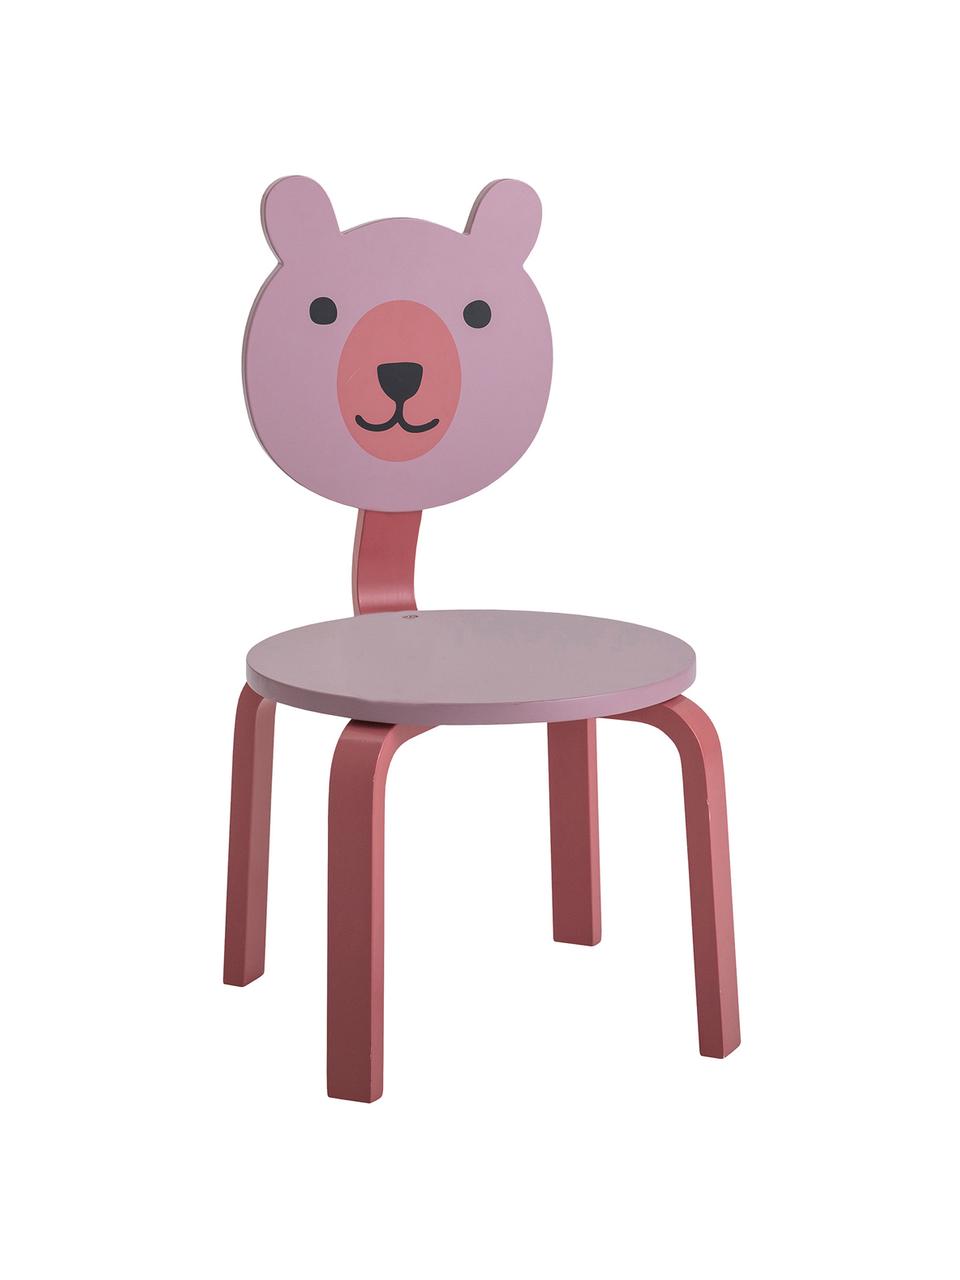 Dětská židle Bear, Odstíny růžové